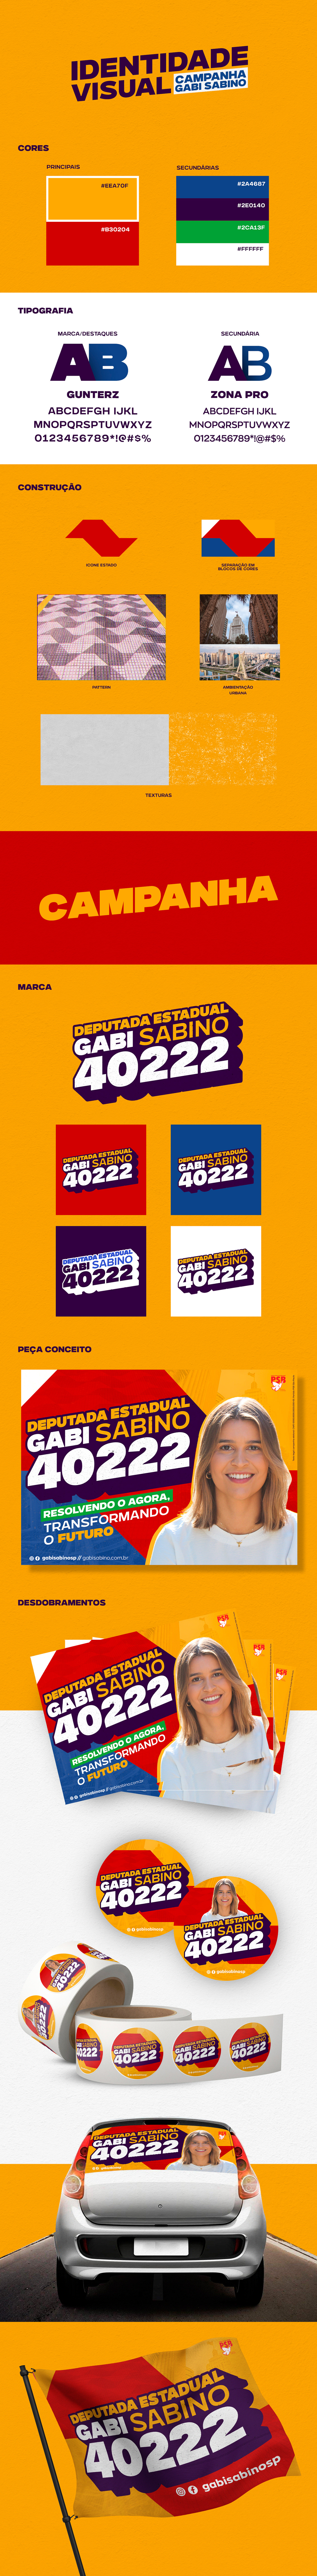 campanha Campanha Eleitoral campanha política deputada DEPUTADA ESTADUAL Eleições identidade visual Politica politico são paulo